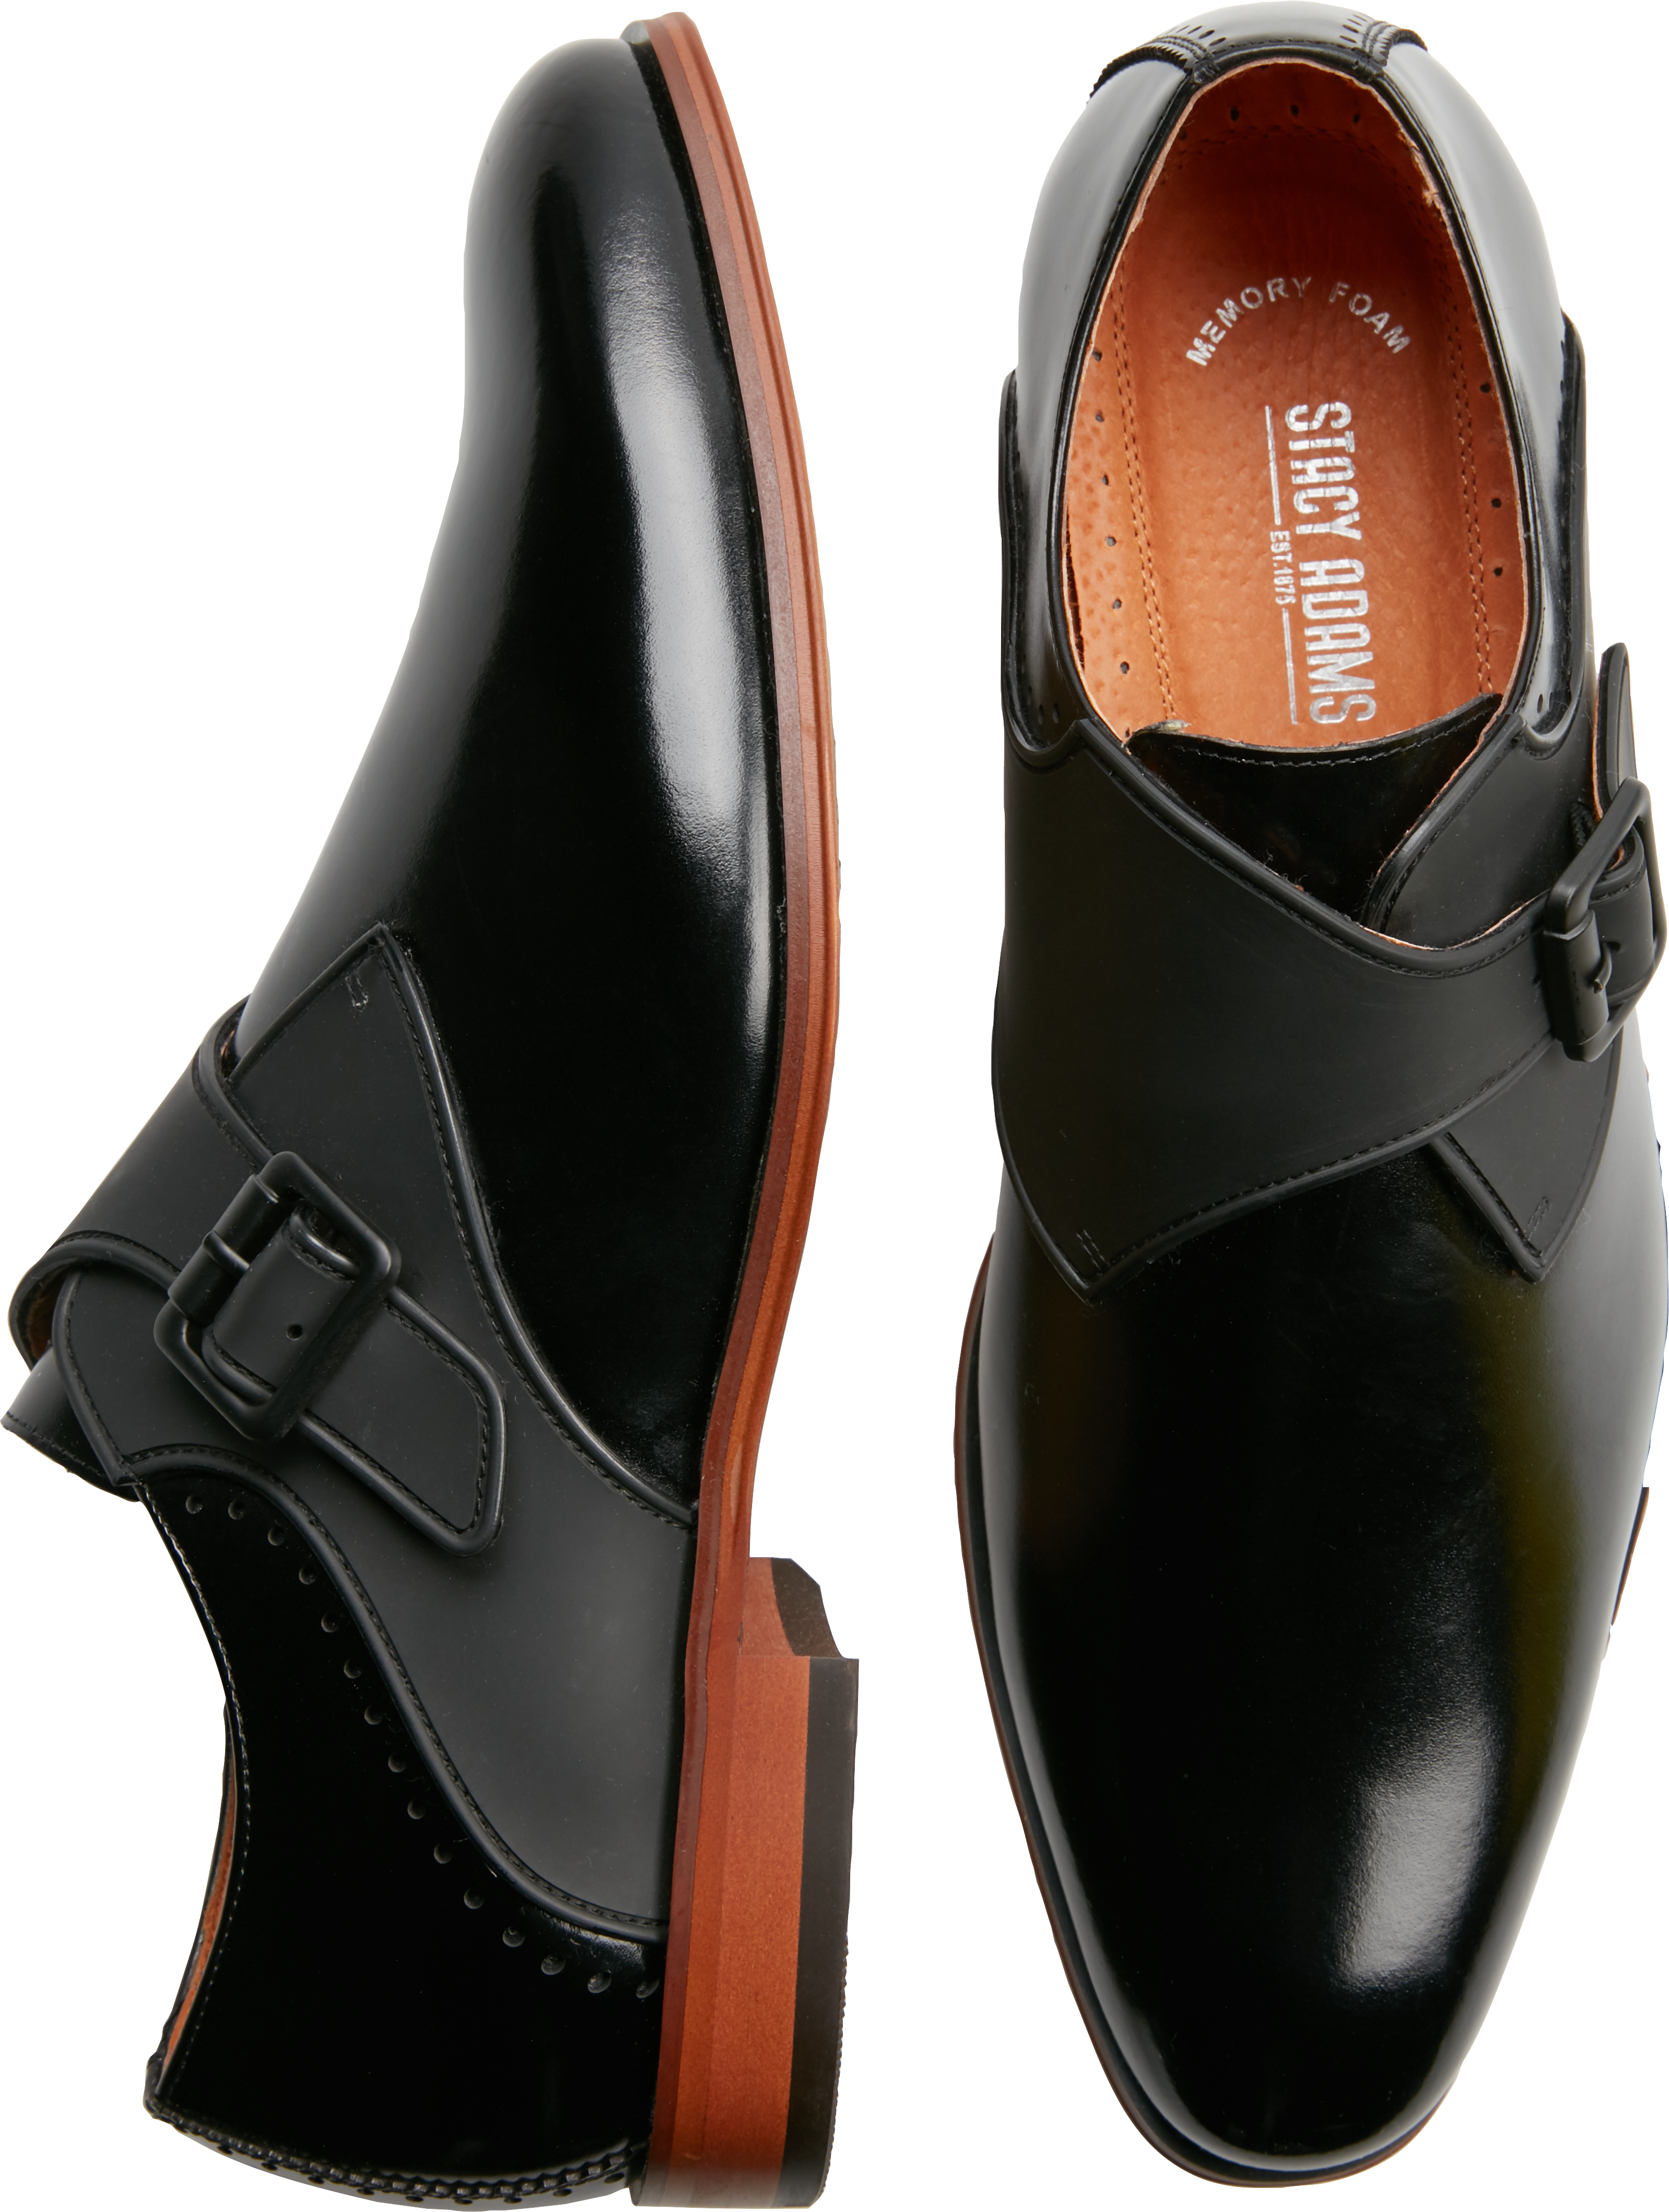 Stacy Adams Sutcliff Black Plain Toe Monk Straps - Men's Shoes | Men's ...